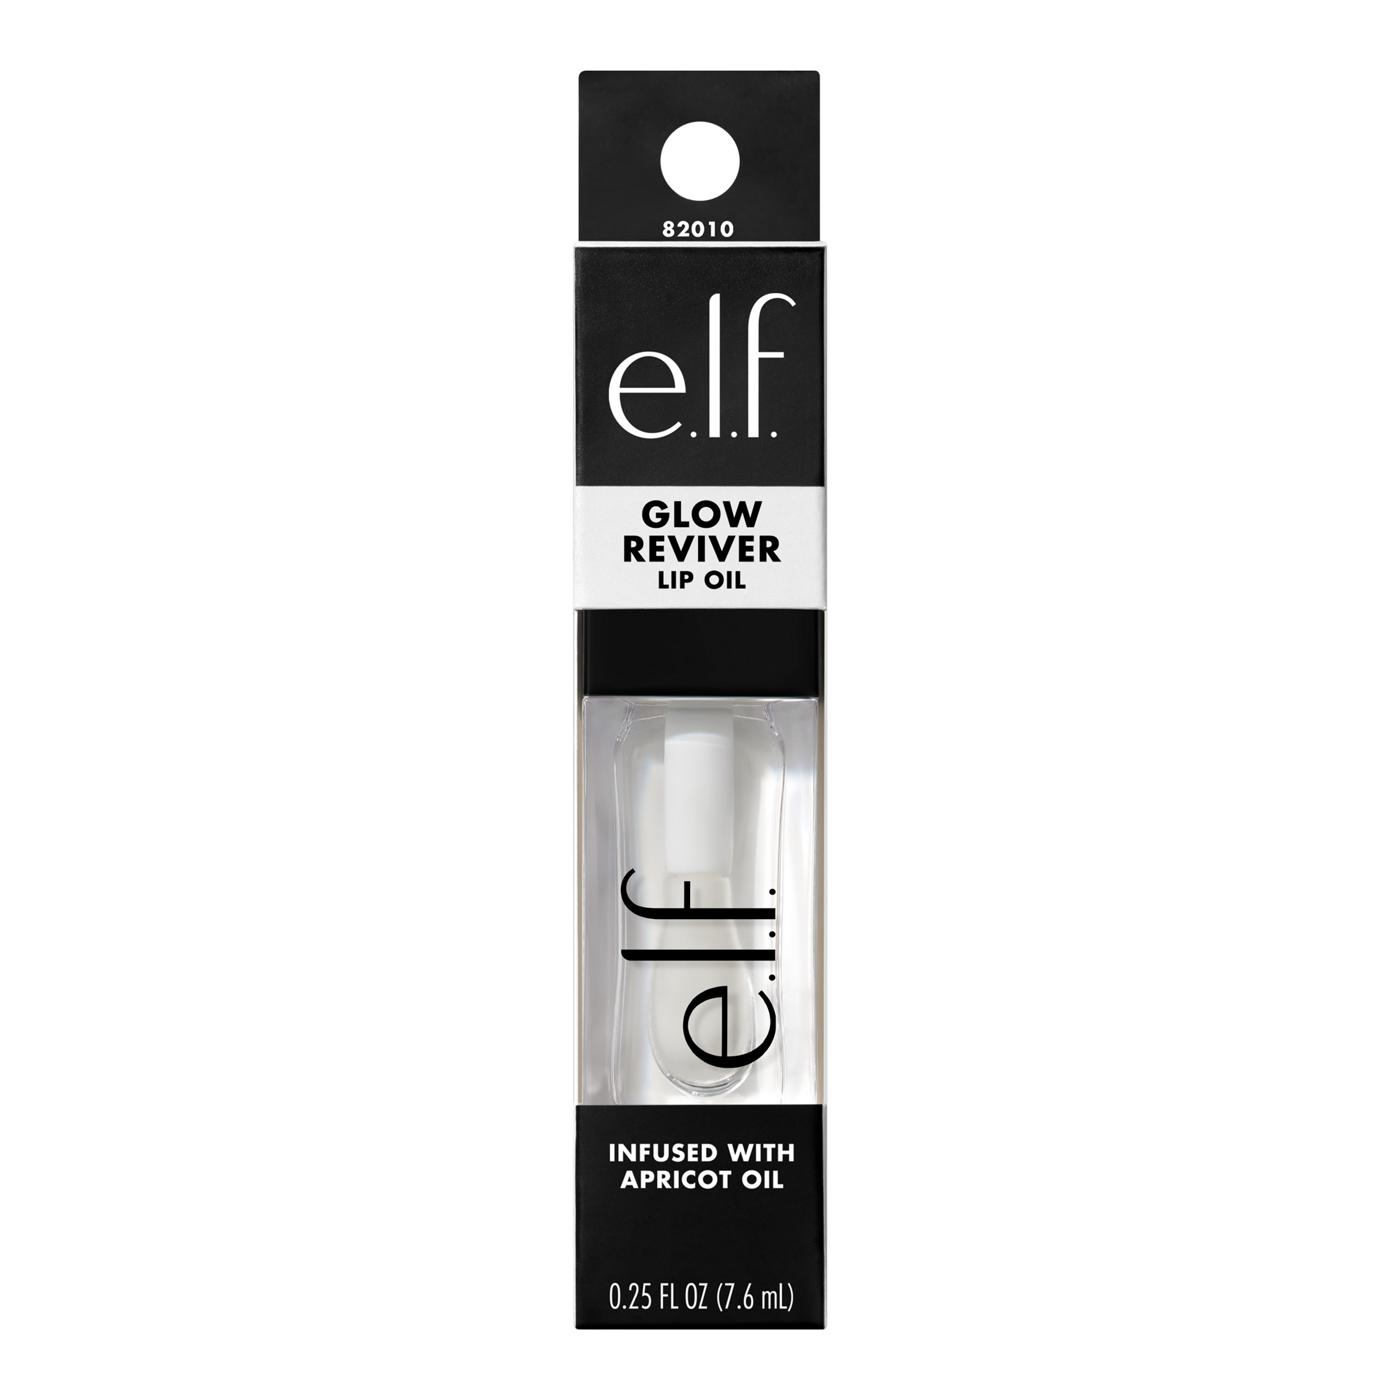 e.l.f. Glow Reviver Lip Oil - Clear; image 1 of 2